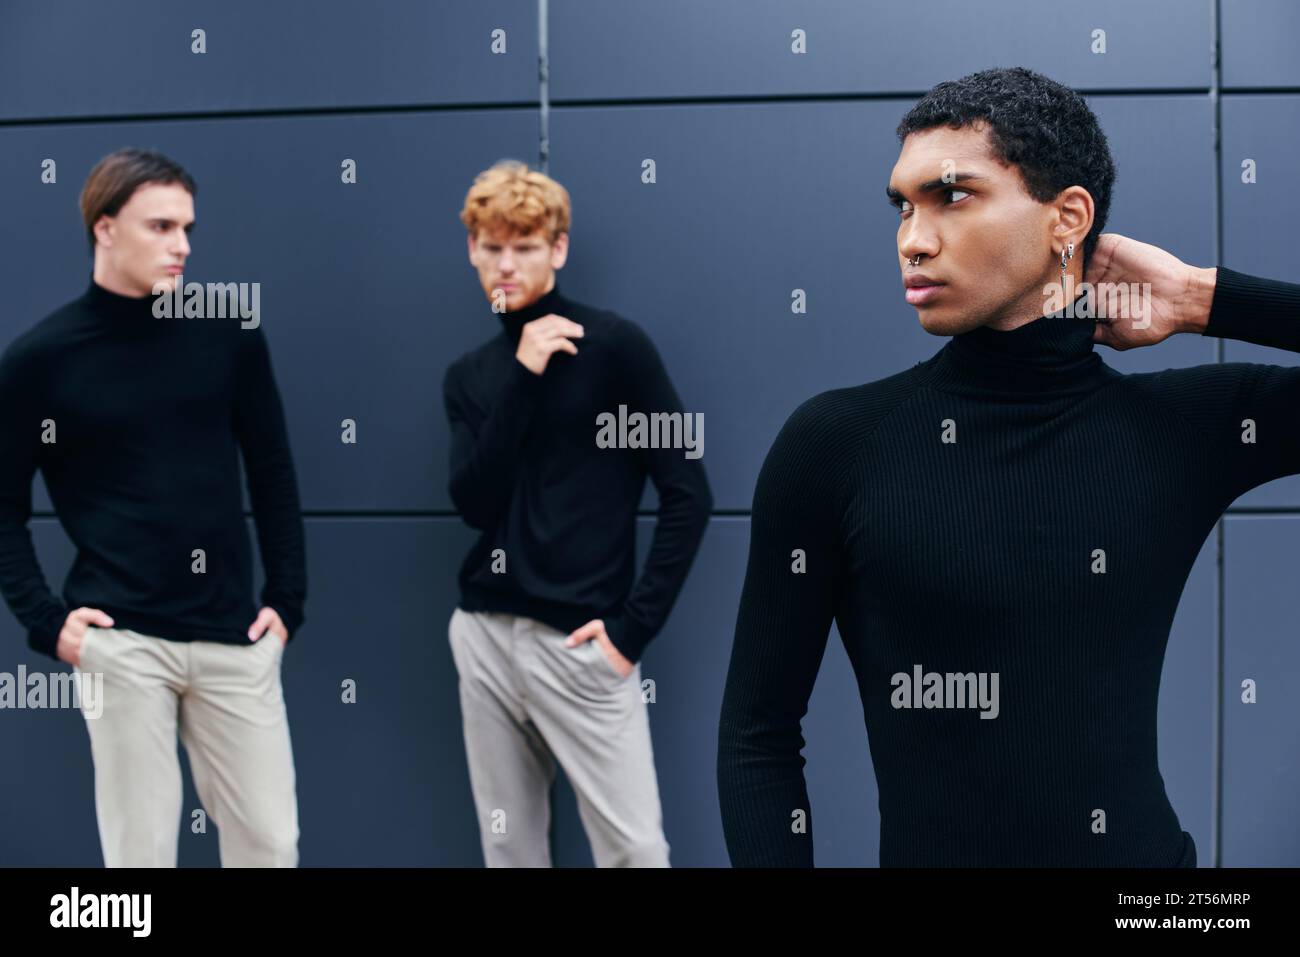 trois jeunes hommes multiraciaux dans des tenues décontractées élégantes debout par le mur, concept de mode Banque D'Images